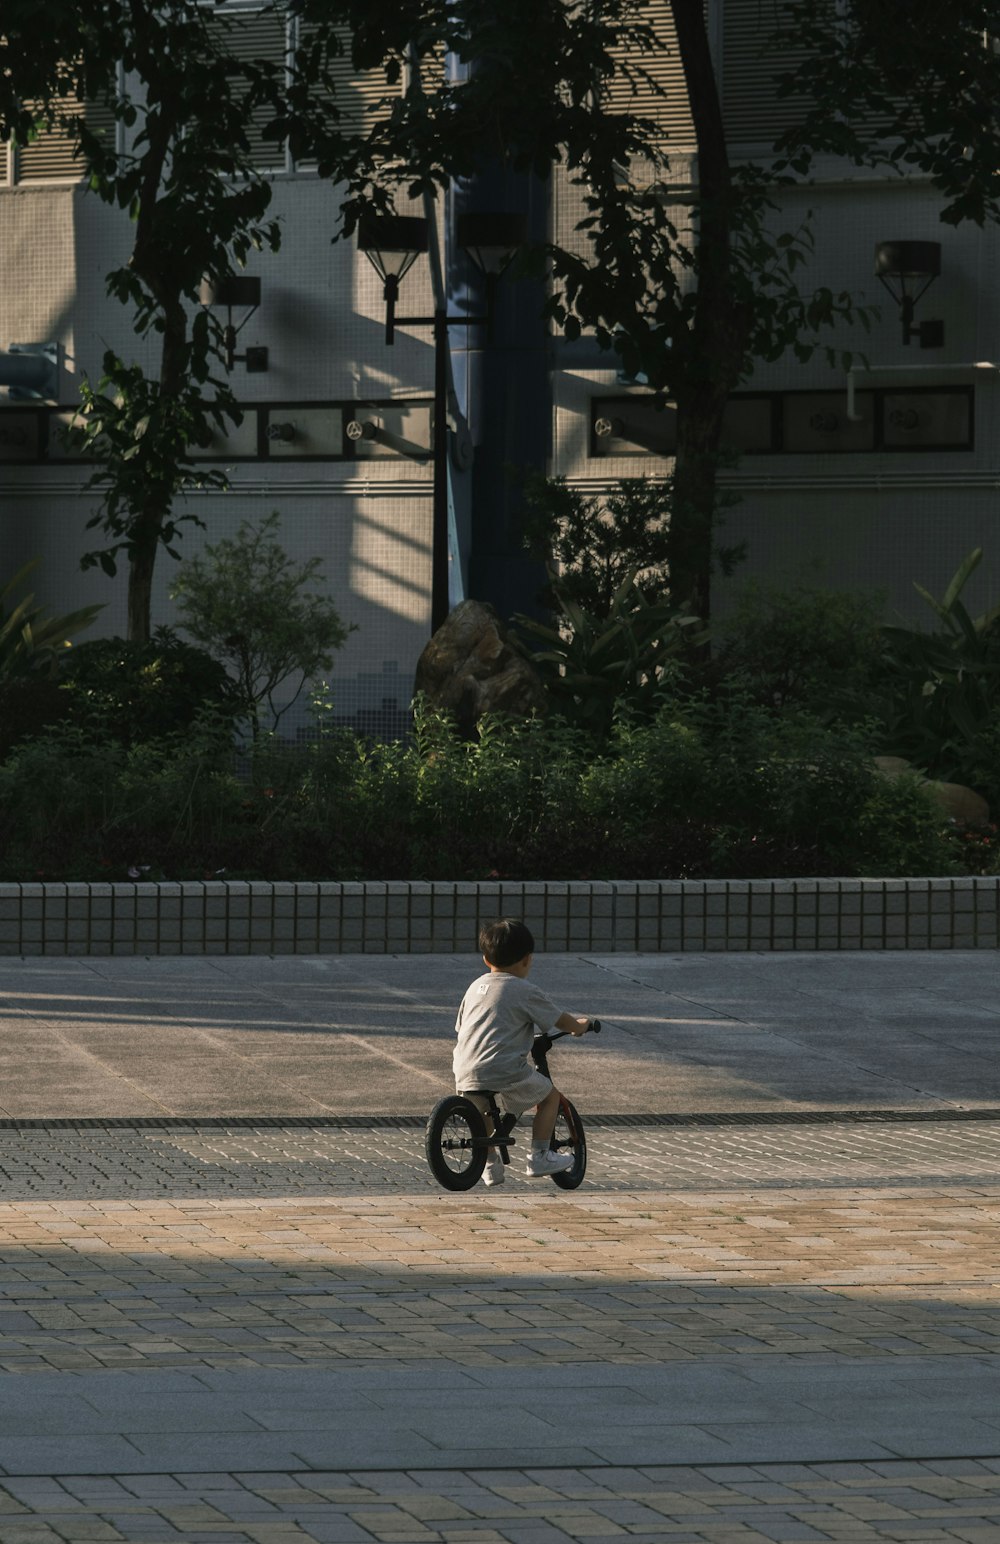 a young boy riding a small bike on a sidewalk